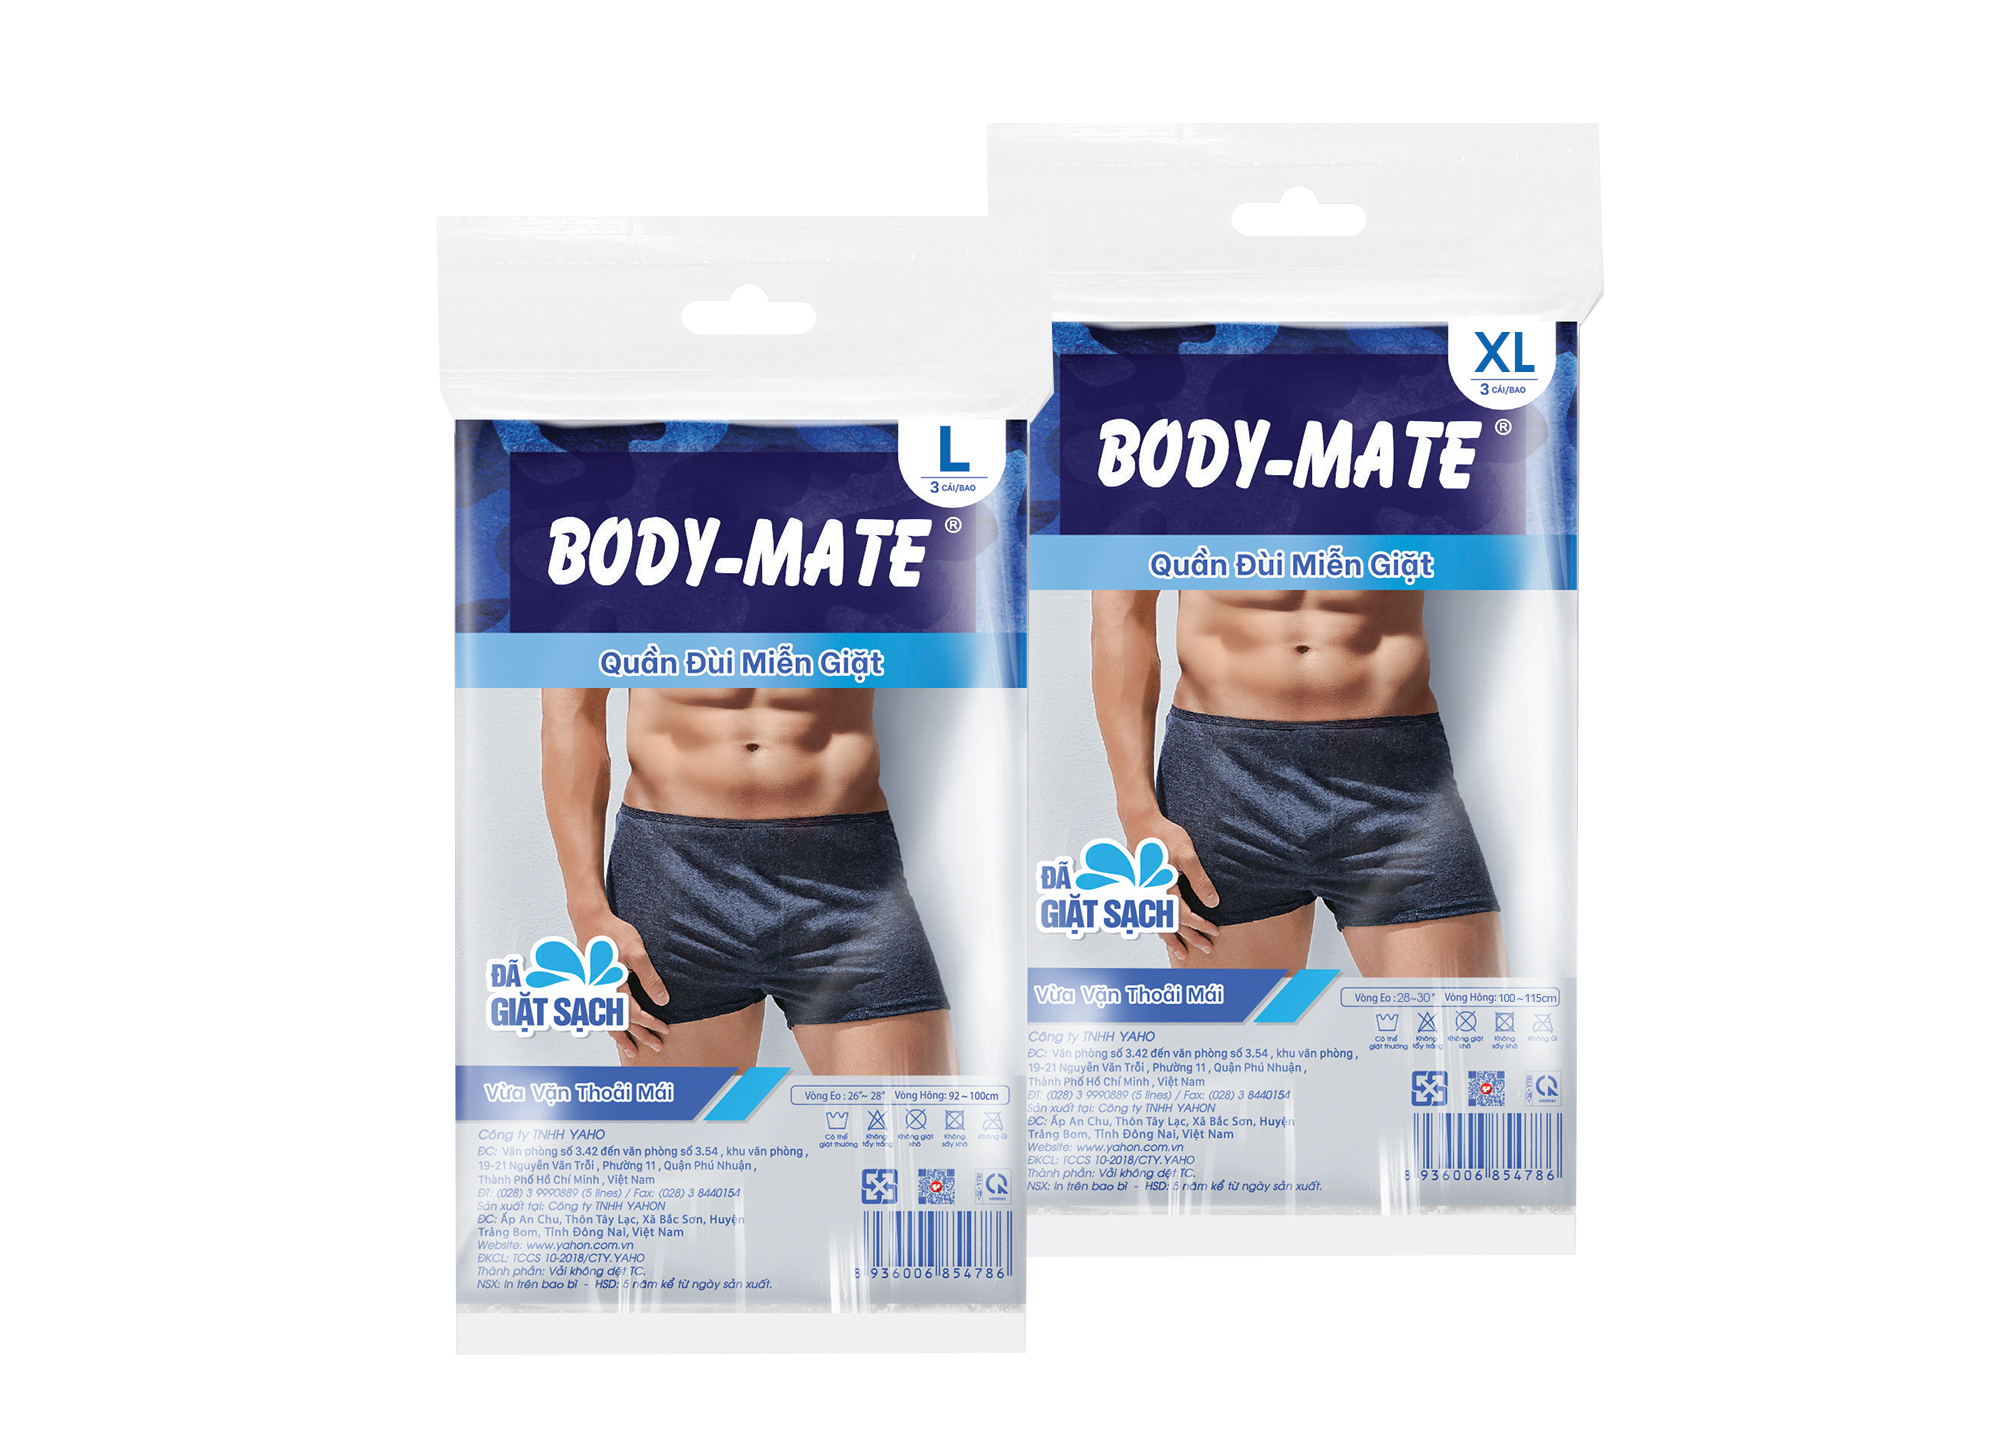 Body-mate brief panties for men